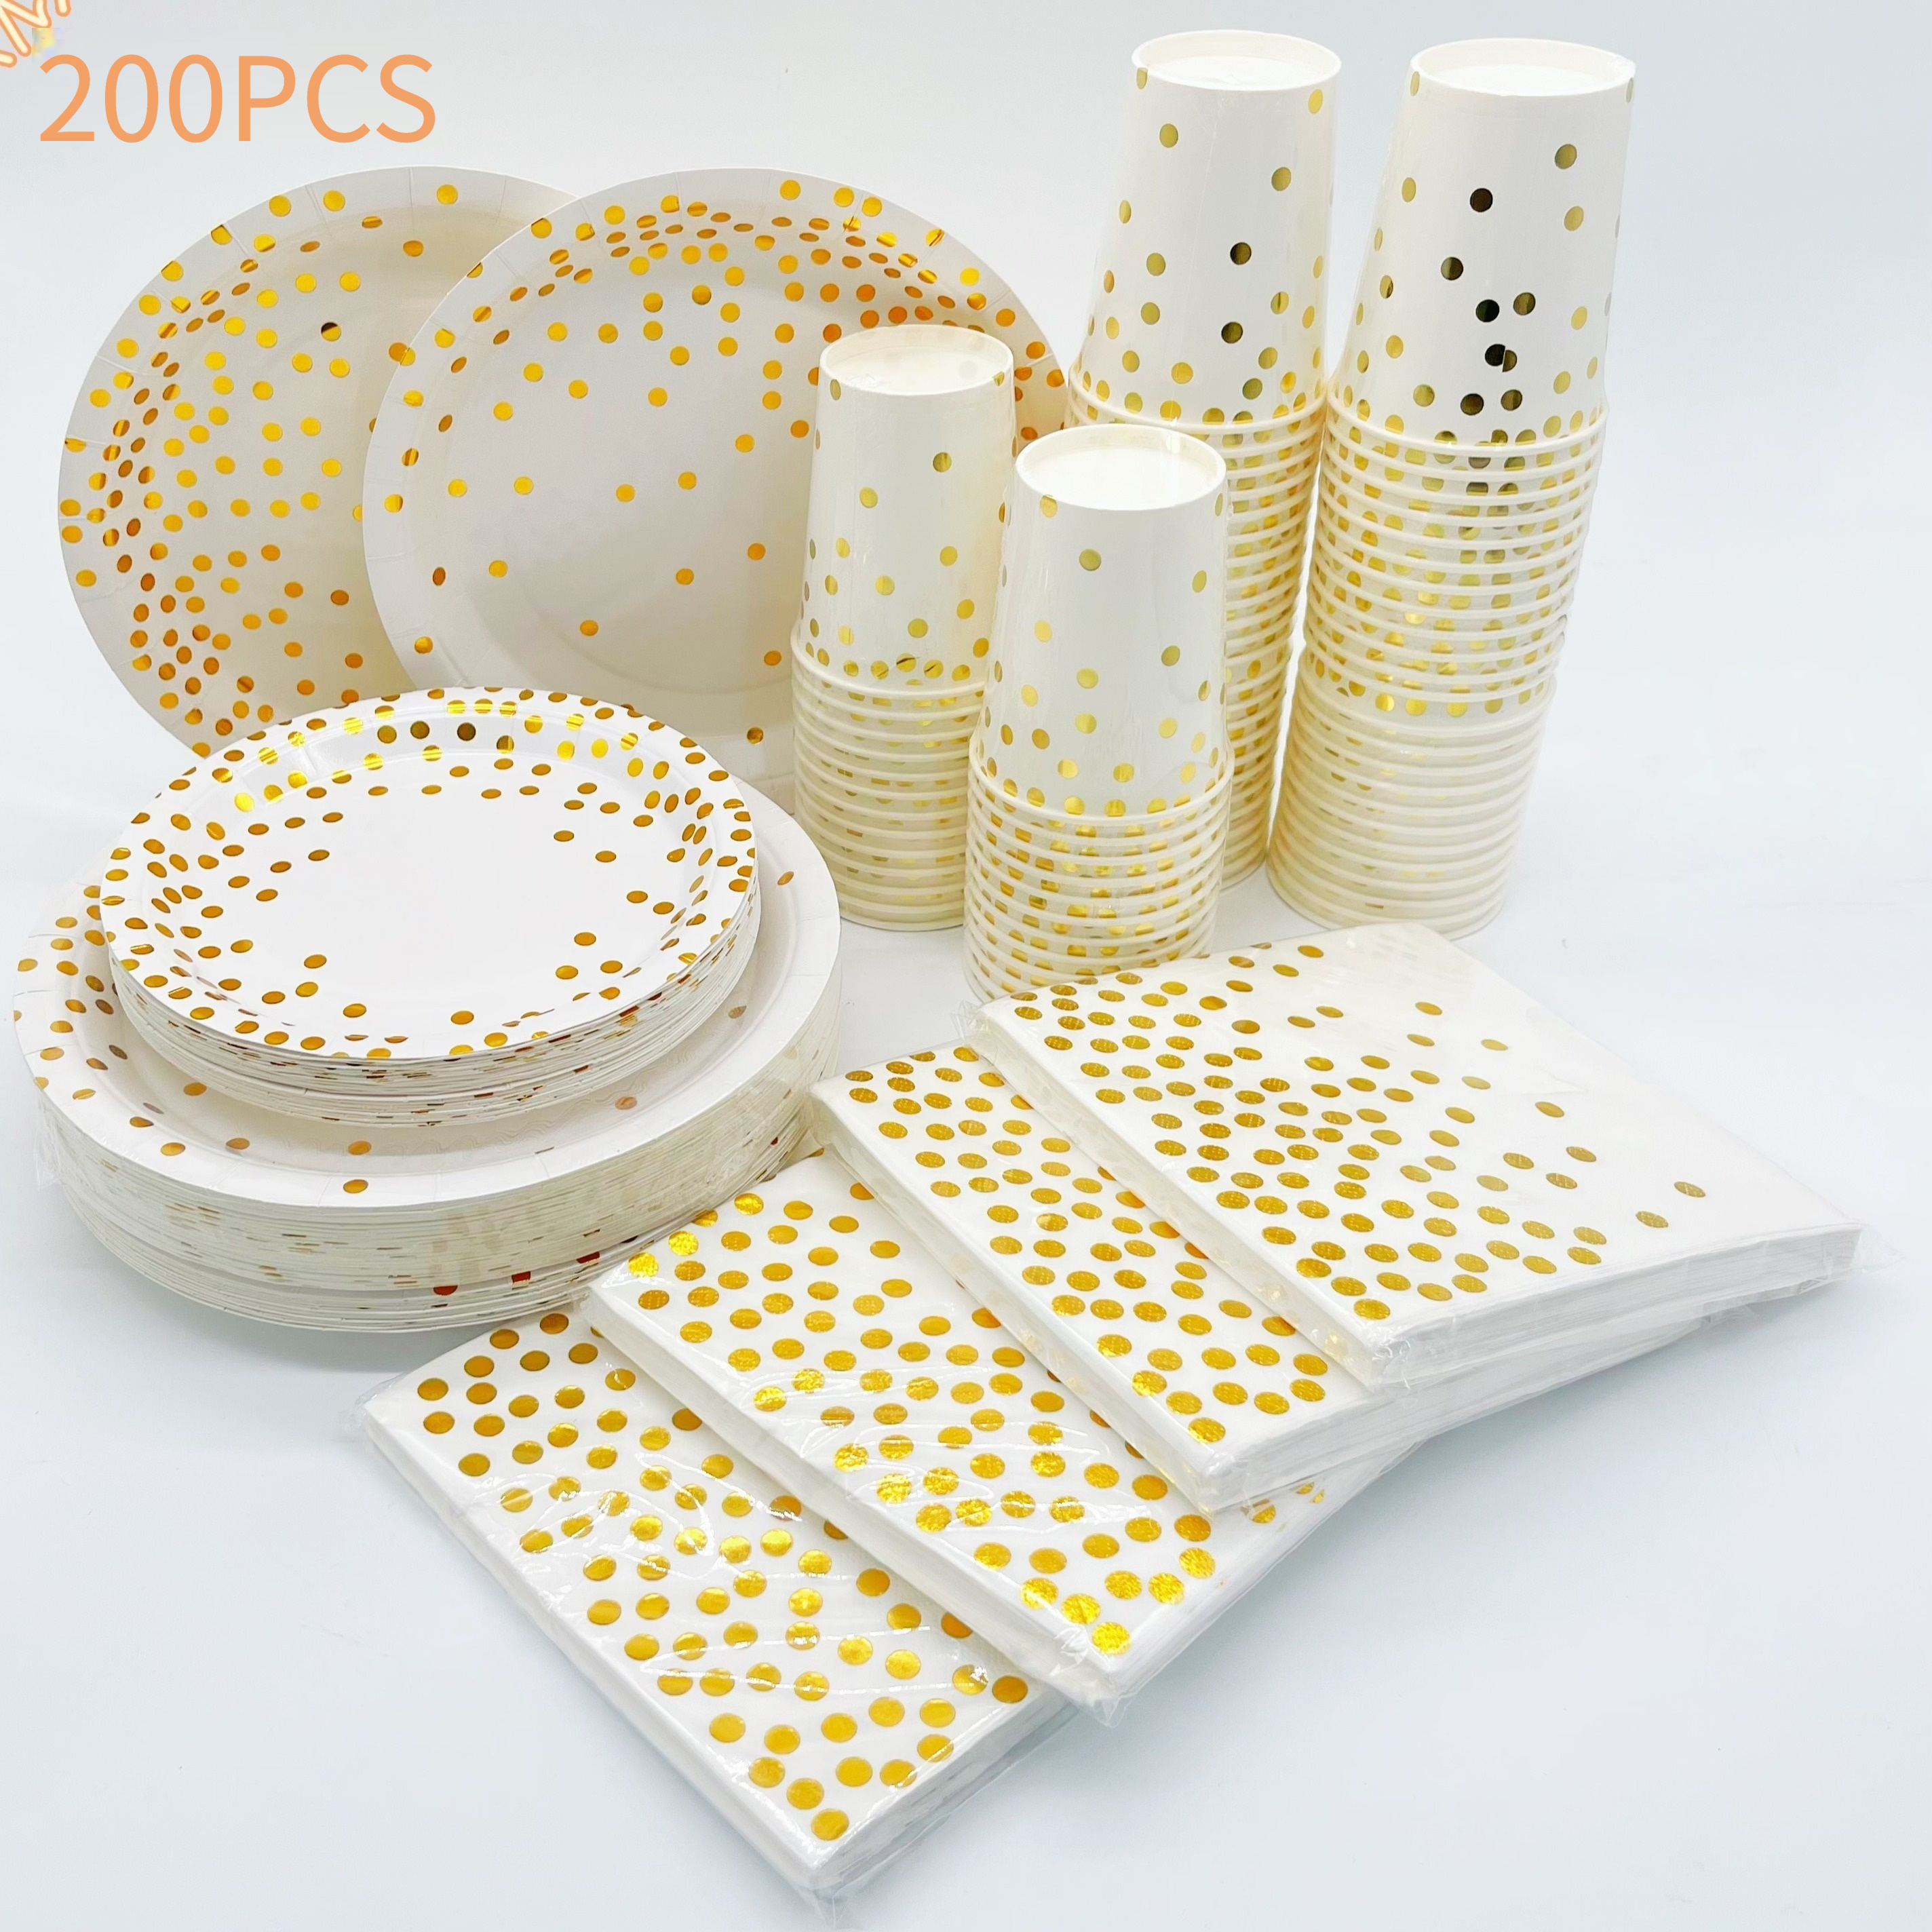 Suministros de fiesta de oro blanco y rosa, juego de vajilla desechable de  350 piezas, platos de papel blanco, servilletas, vasos, tenedores de